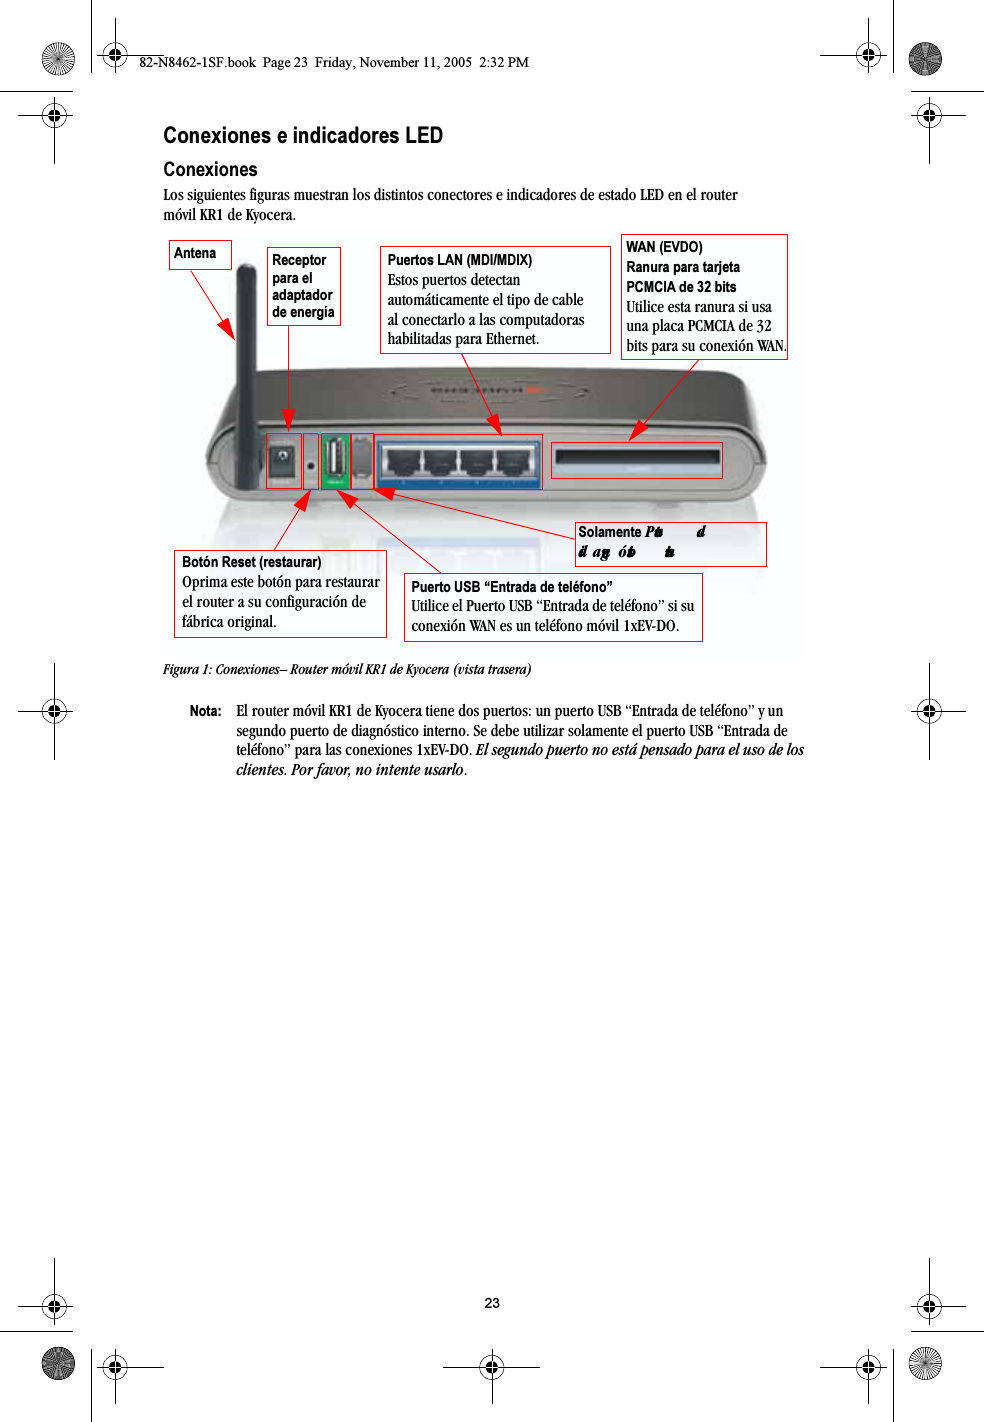 23Conexiones e indicadores LEDConexionesLos siguientes figuras muestran los distintos conectores e indicadores de estado LED en el router móvil KR1 de Kyocera.Figura 1: Conexiones– Router móvil KR1 de Kyocera (vista trasera)Nota: El router móvil KR1 de Kyocera tiene dos puertos: un puerto USB “Entrada de teléfono” y un segundo puerto de diagnóstico interno. Se debe utilizar solamente el puerto USB “Entrada de teléfono” para las conexiones 1xEV-DO. El segundo puerto no está pensado para el uso de los clientes. Por favor, no intente usarlo.Puertos LAN (MDI/MDIX)Estos puertos detectan automáticamente el tipo de cable al conectarlo a las computadoras habilitadas para Ethernet.Receptor para el adaptador de energíaBotón Reset (restaurar)Oprima este botón para restaurar el router a su configuración de fábrica original.Puerto USB “Entrada de teléfono”Utilice el Puerto USB “Entrada de teléfono” si su conexión WAN es un teléfono móvil 1xEV-DO.Antena WAN (EVDO) Ranura para tarjeta PCMCIA de 32 bitsUtilice esta ranura si usa una placa PCMCIA de 32 bits para su conexión WAN.Solamente=mìÉêíç=ÇÉ=Çá~ÖåµëíáÅç=áåíÉêåç82-N8462-1SF.book  Page 23  Friday, November 11, 2005  2:32 PM